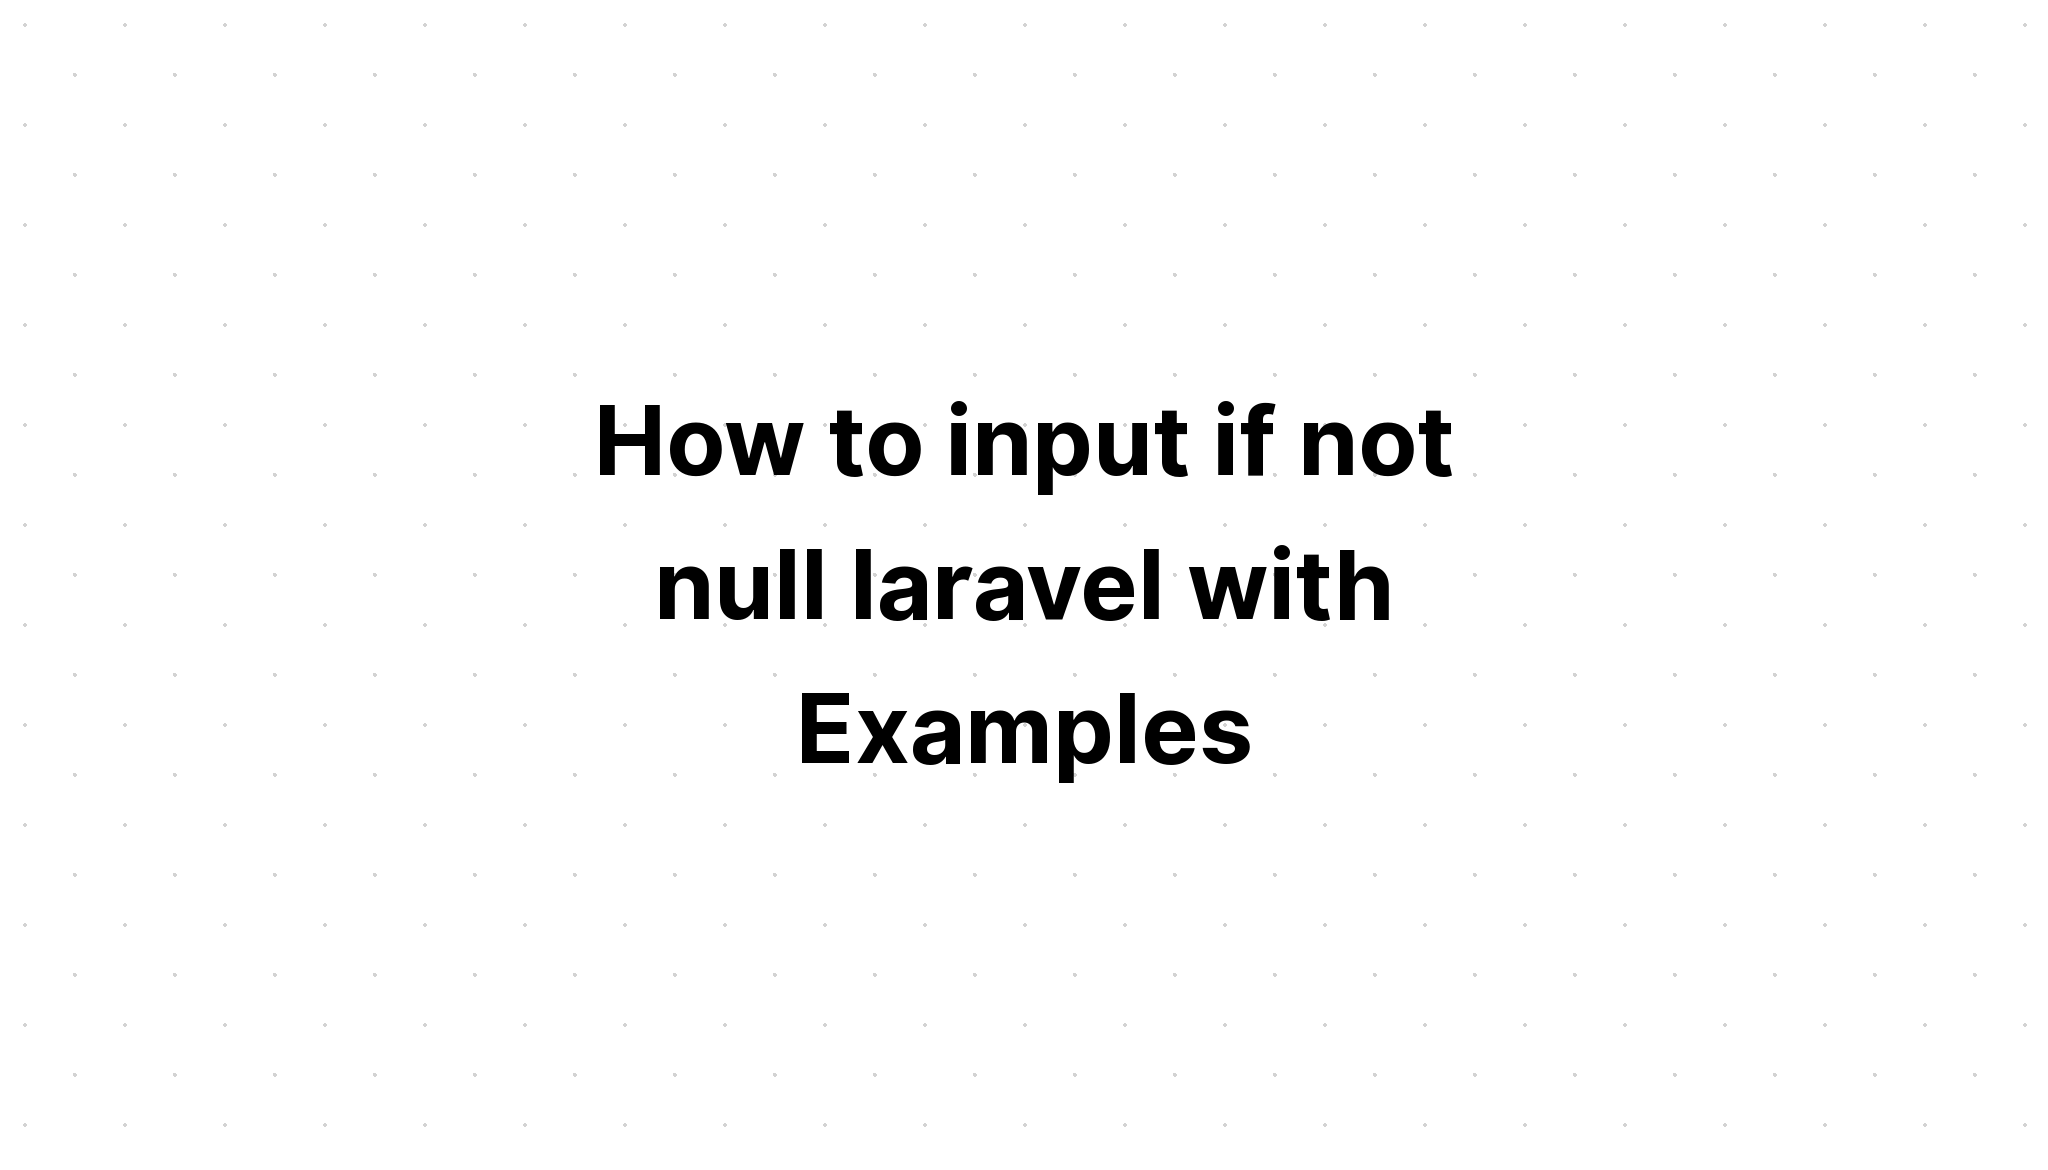 Cách nhập if not null laravel với các ví dụ